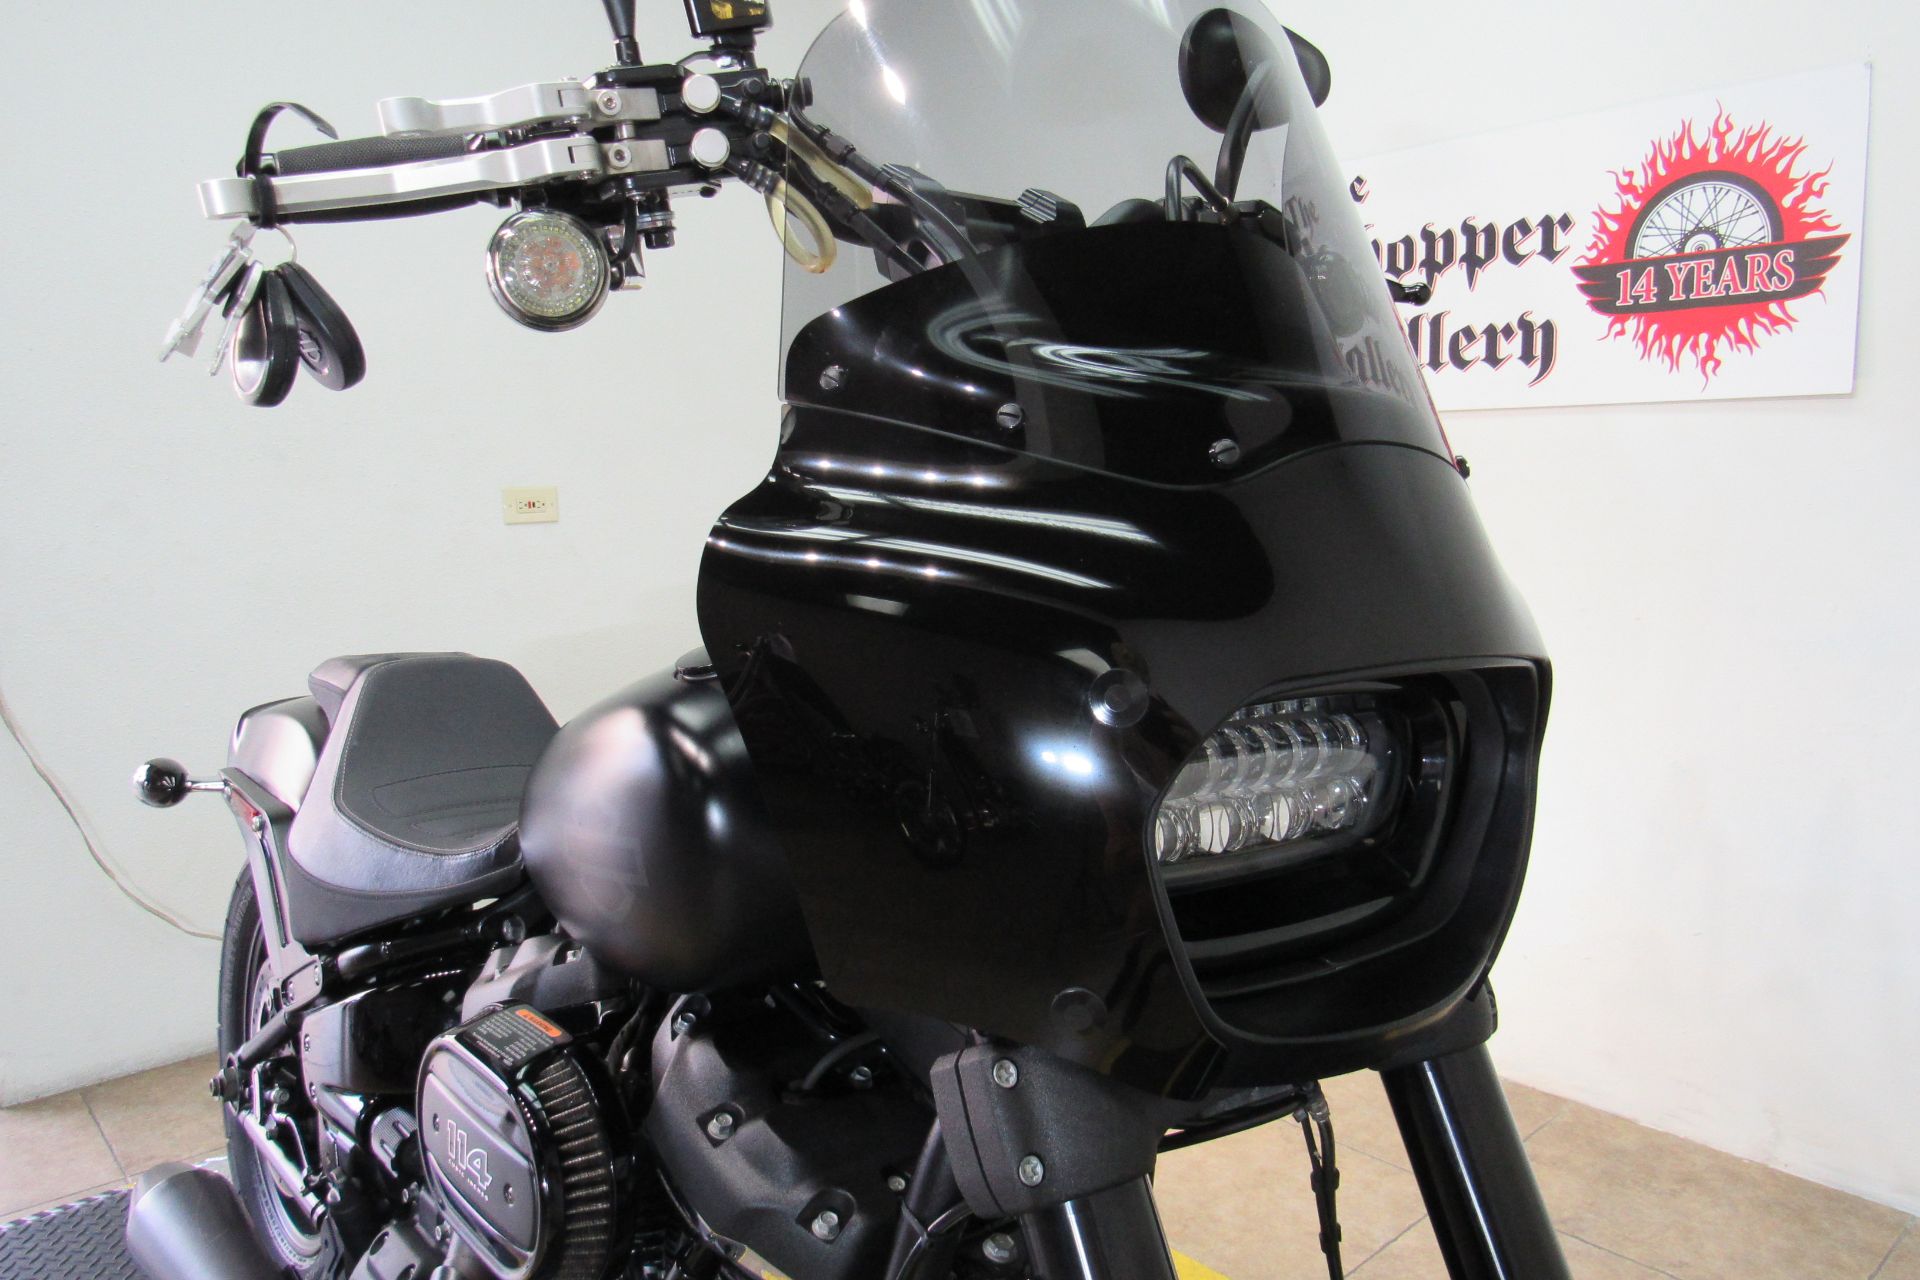 2019 Harley-Davidson Fat Bob® 114 in Temecula, California - Photo 6